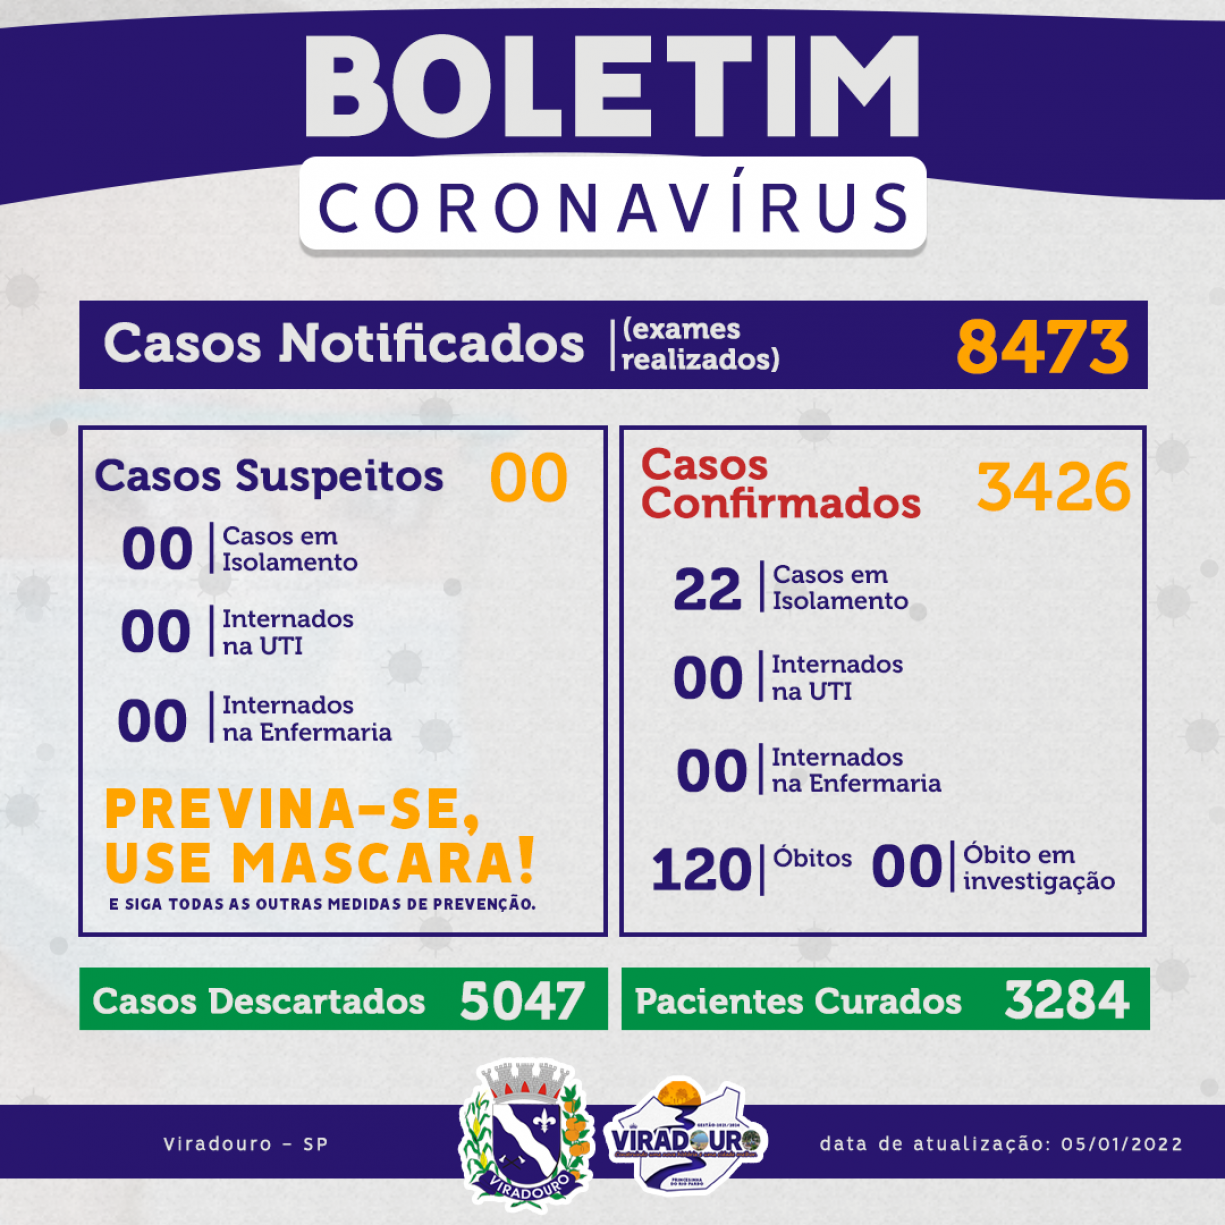 CORONAVÍRUS: BOLETIM EPIDEMIOLÓGICO (ATUALIZAÇÃO 05/01/2022)